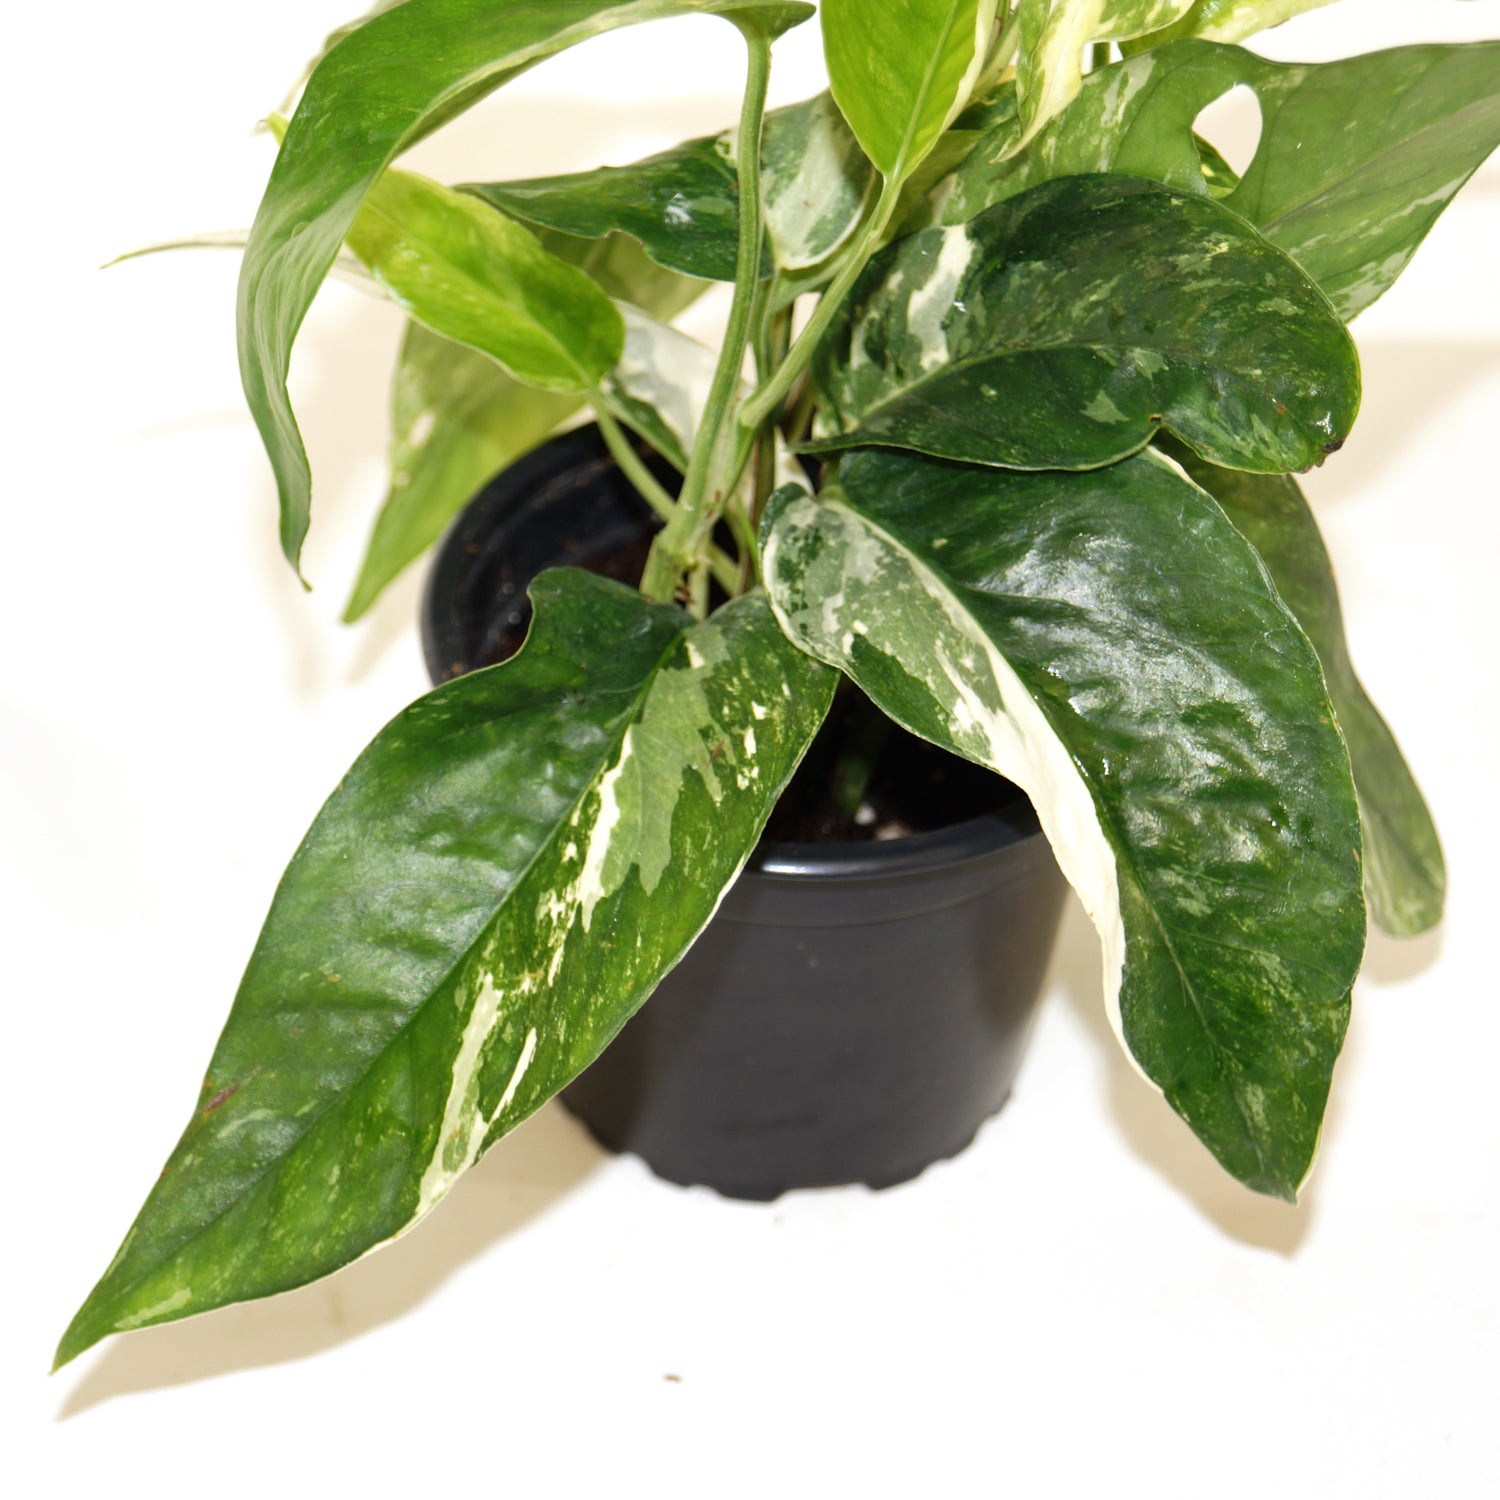 Epipremnum pinnatum albo-variegata